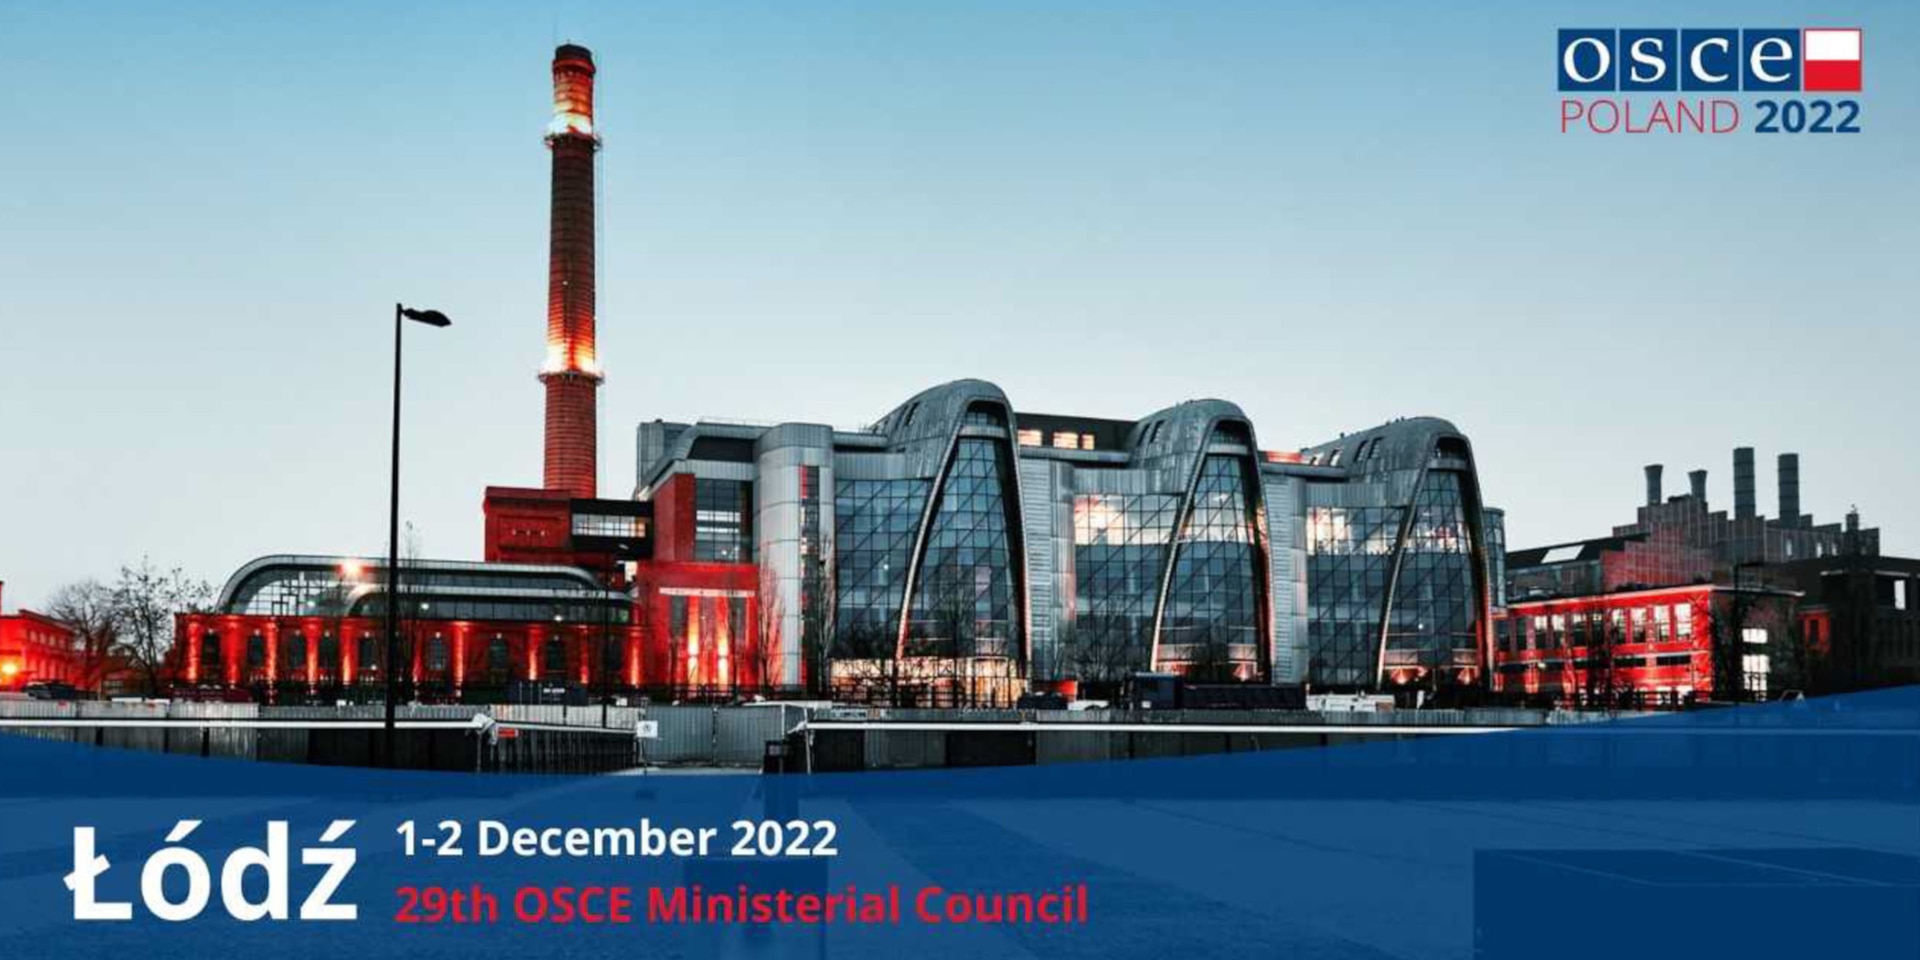 Ein grosses Industriegebäude, das heute als Konferenzort eingesetzt wird. Rechts oben steht das Logo des OSZE-Vorsitzes von Polen im Jahr 2022.